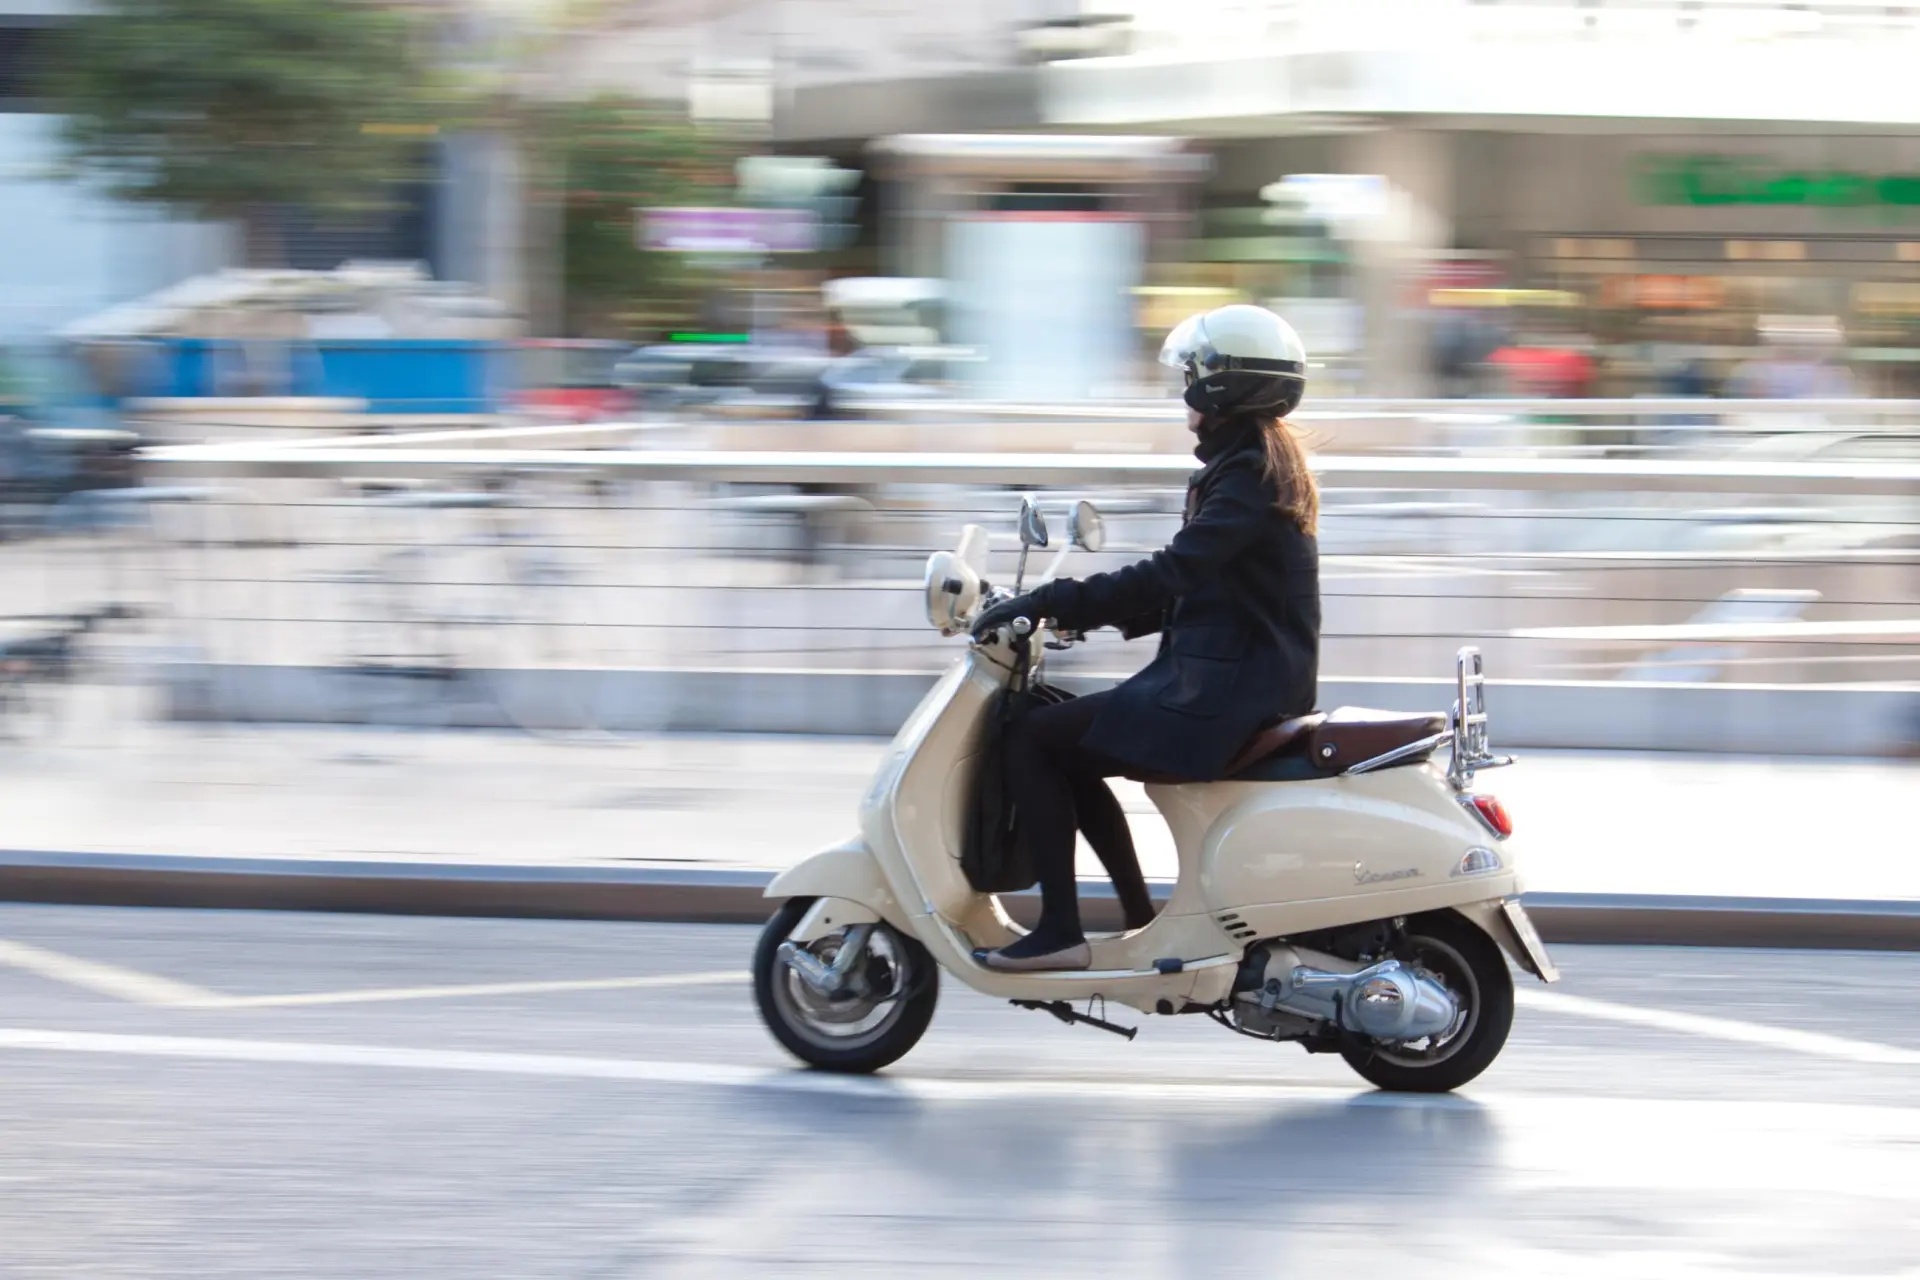 žena jedoucí na bílém skútru Vespa italskou ulicí